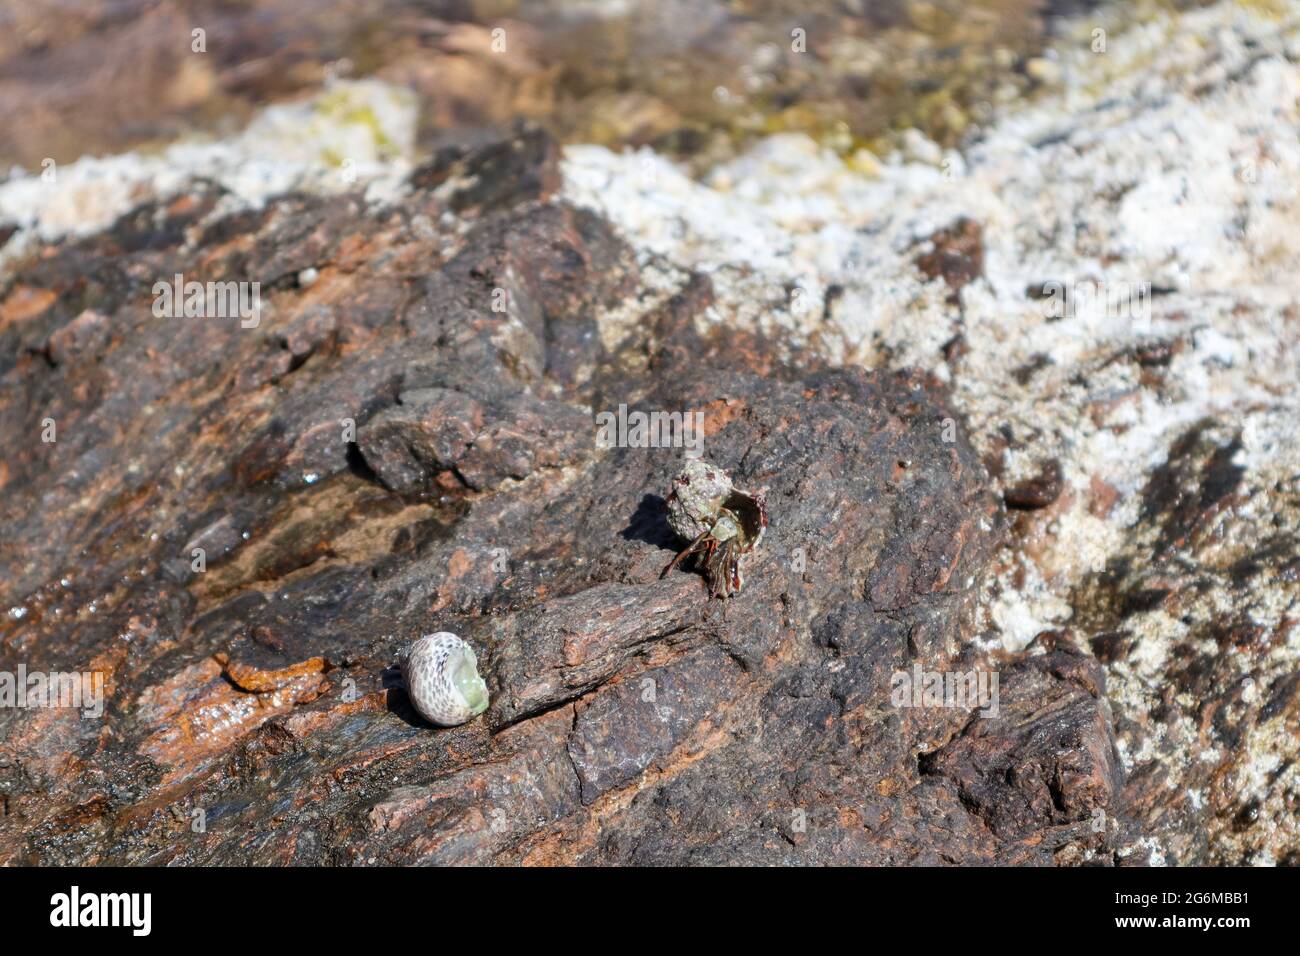 Granchio eremita nascosto in mollusco guscio duro primo piano sulla superficie rocciosa sotto il sole mediterraneo estivo sulla riva del mare. Vita marina selvaggia Foto Stock